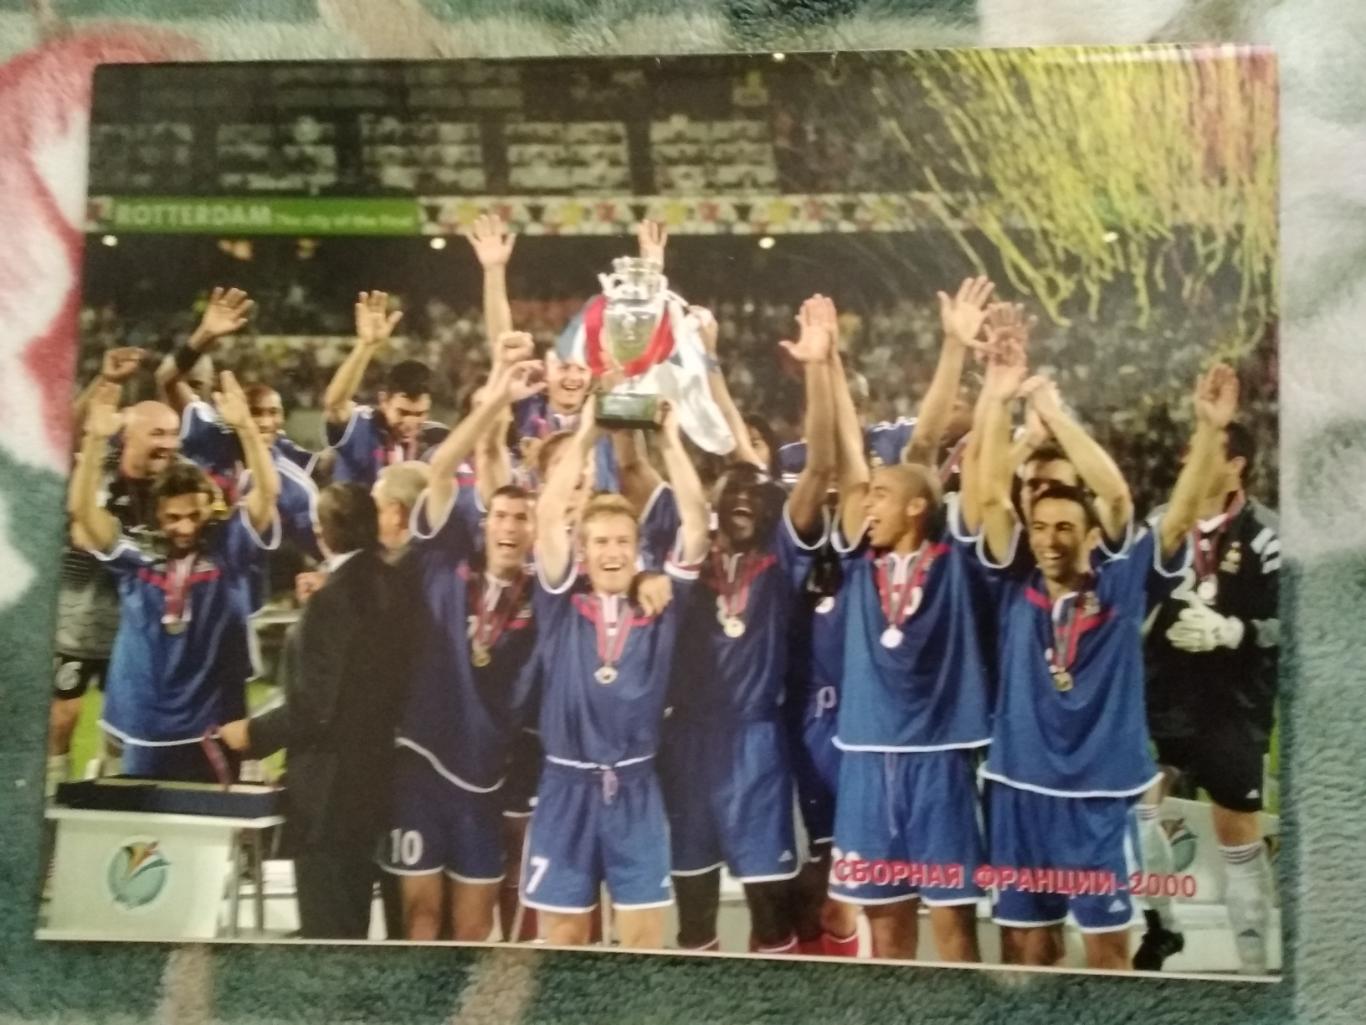 Франция чемпион по футболу какие годы. Франция чемпион Европы 2000. Сборная Франции чемпион Европы по футболу 2000. Сборная Франции евро 2000. Че 2000 финал.